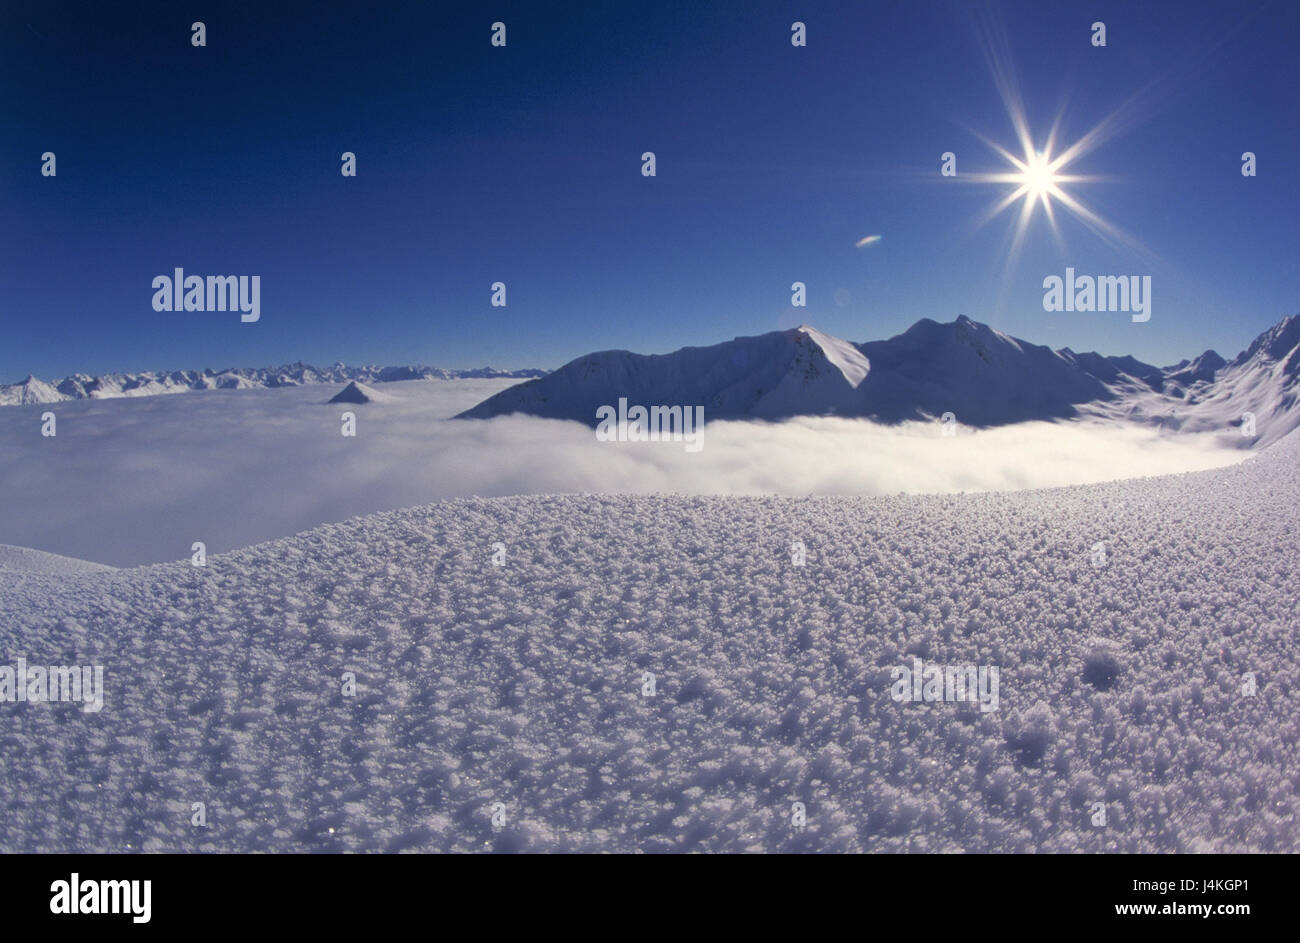 Austria, Tirolo, Samnaun, una scanalatura di testa, paesaggio di montagna, mare di nuvole, back light Europa, alpi Paznauntal, montagne, montagna, cima, nevoso, nebuloso mare, copertura nuvolosa, nuvole, di riposo e di silenzio e solitudine, inverno invernale stagione, Foto Stock